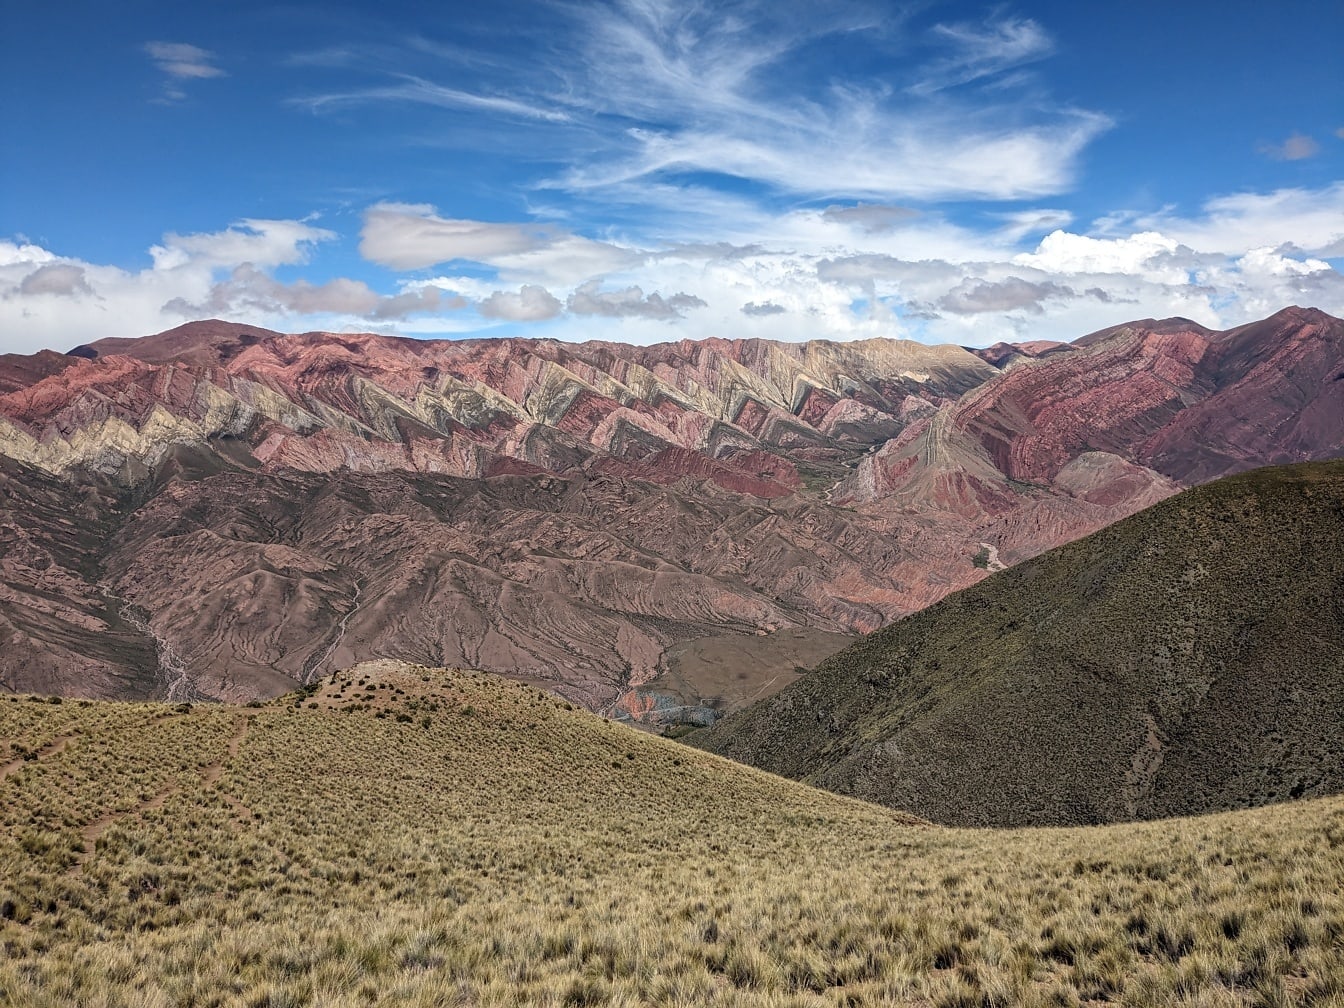 Dallandskap i Serranía de Hornocal-bergen i Argentinas naturreservat